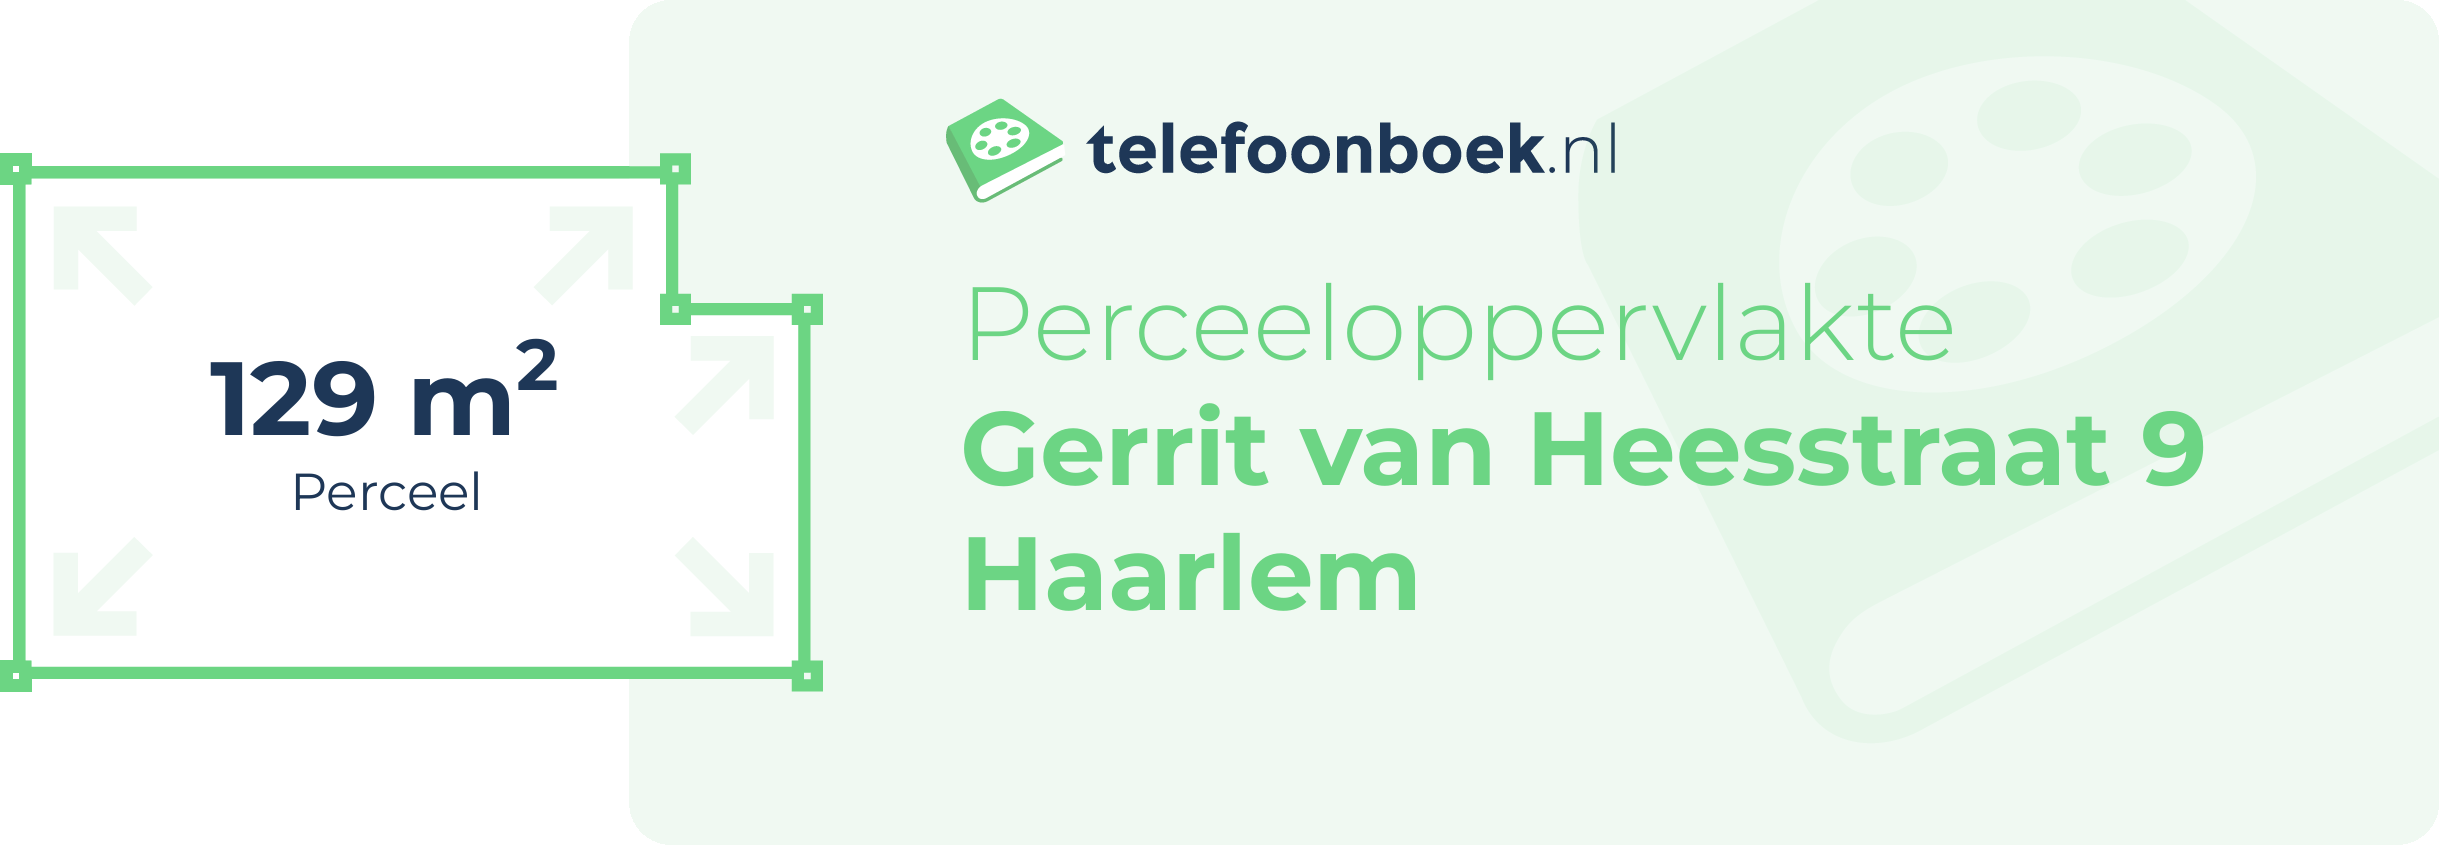 Perceeloppervlakte Gerrit Van Heesstraat 9 Haarlem